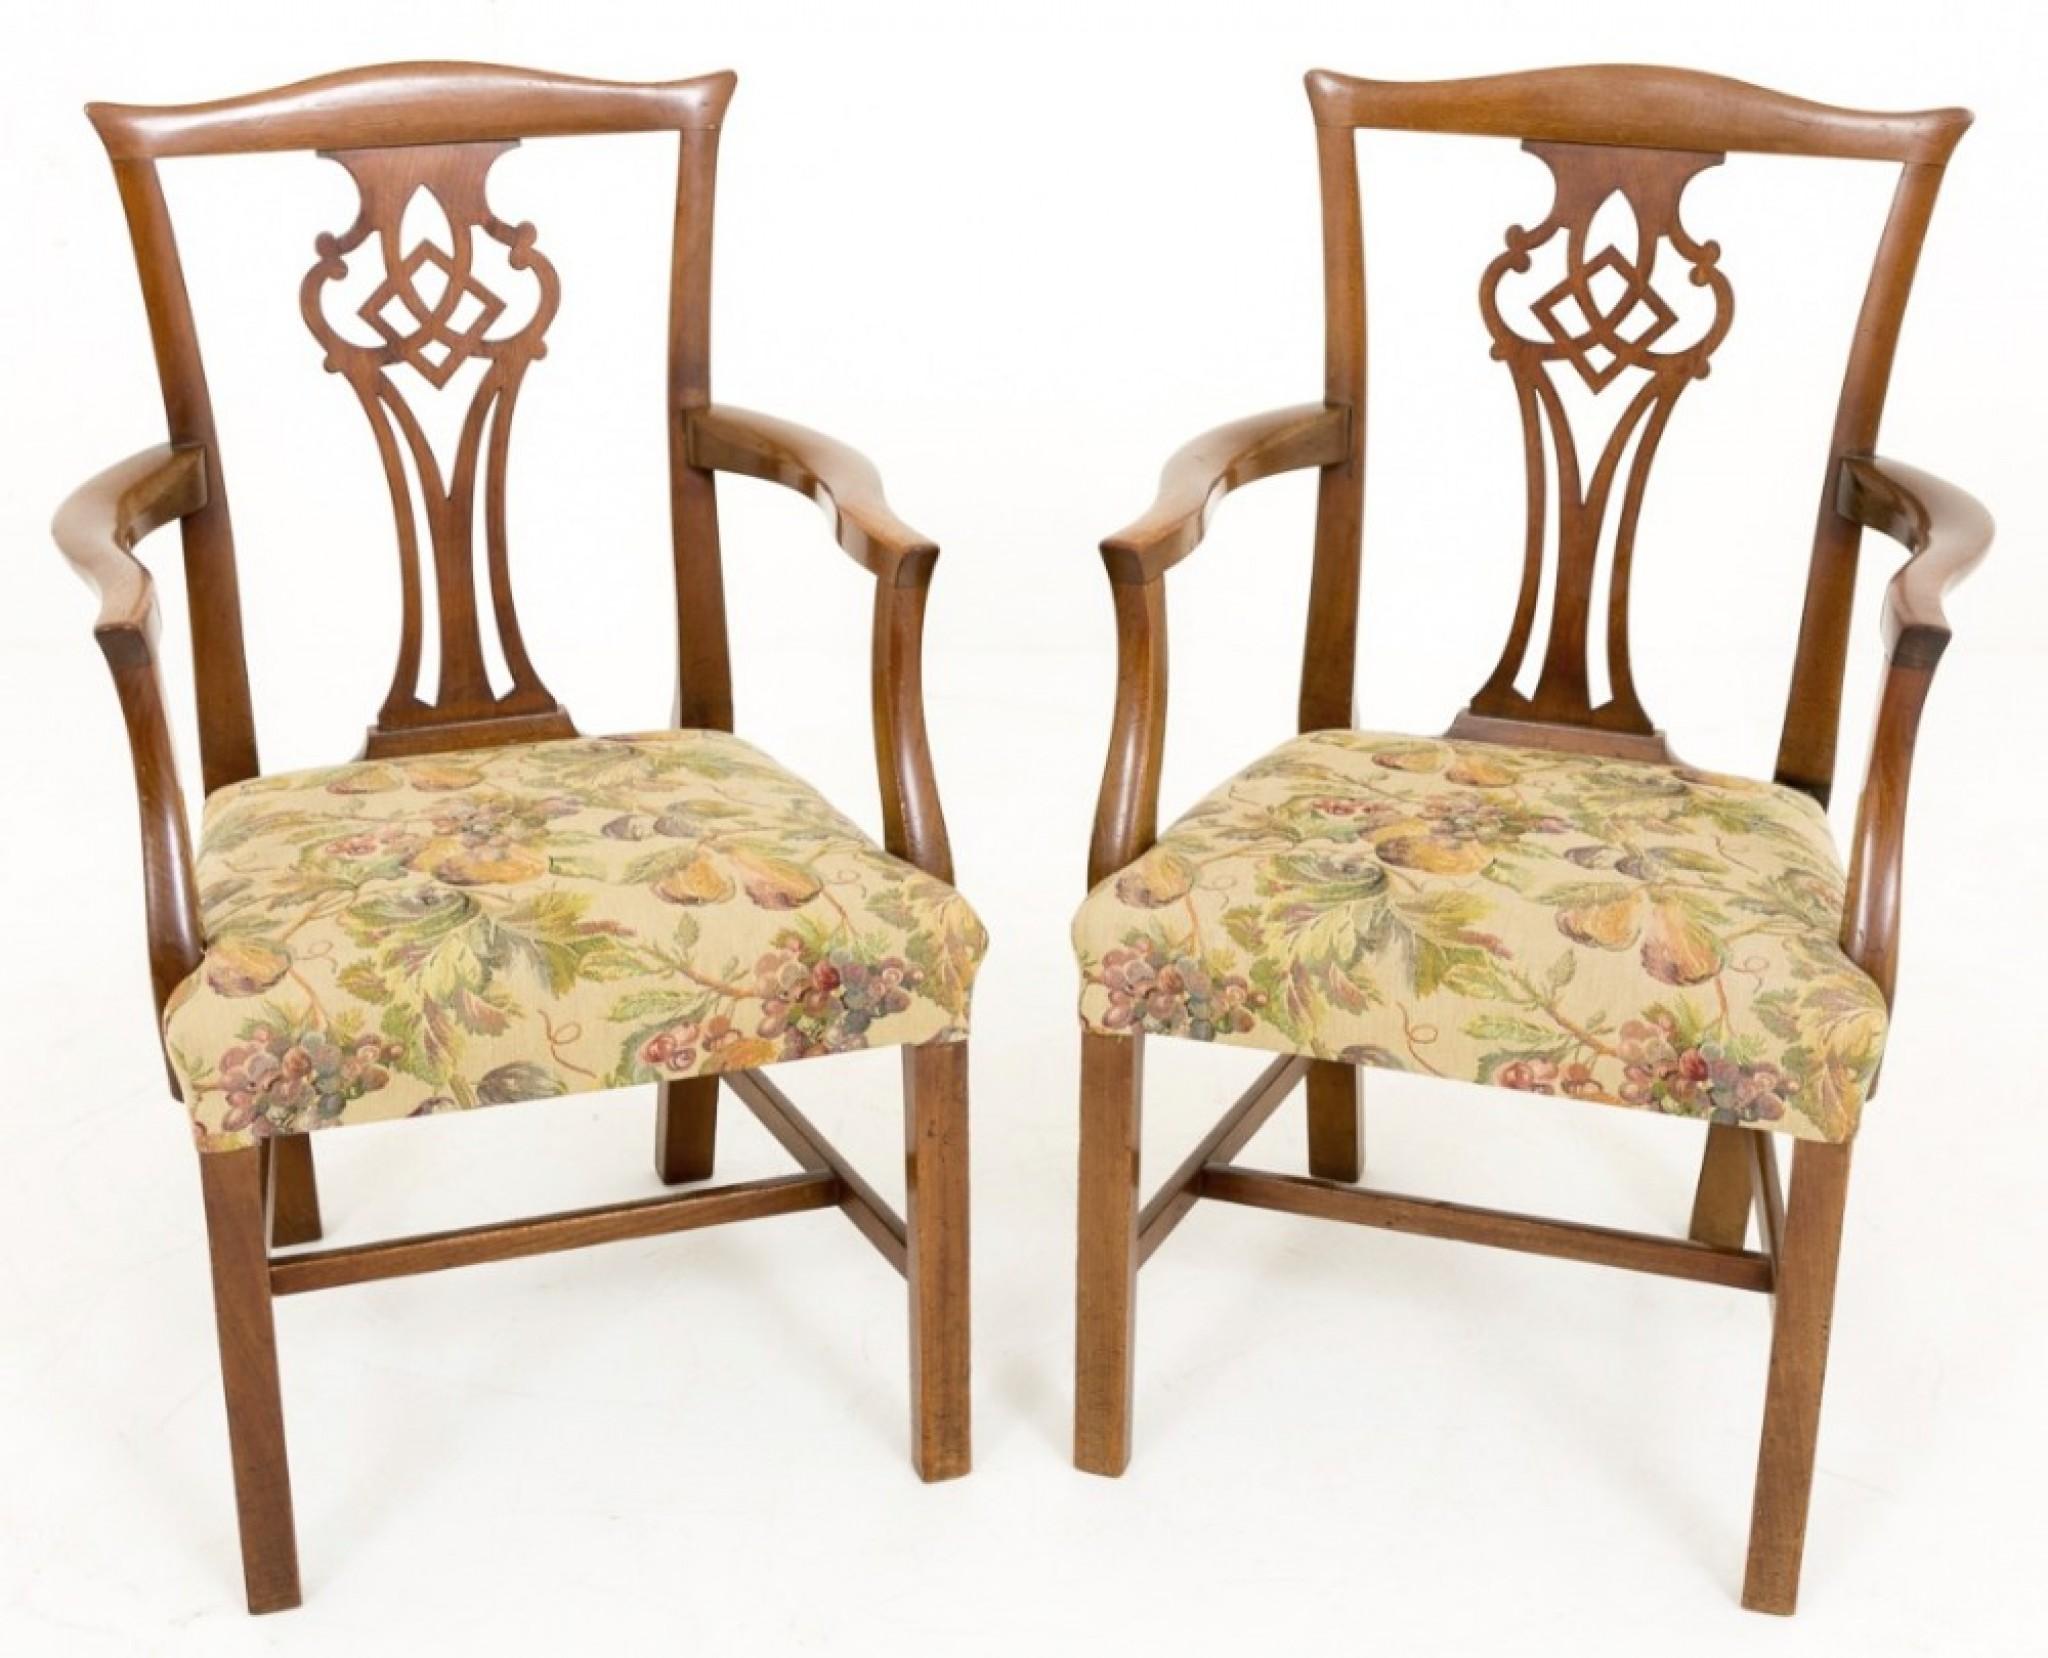 Paire de fauteuils en acajou de style Chippendale.
Les pieds carrés sont surélevés sur un cadre en 